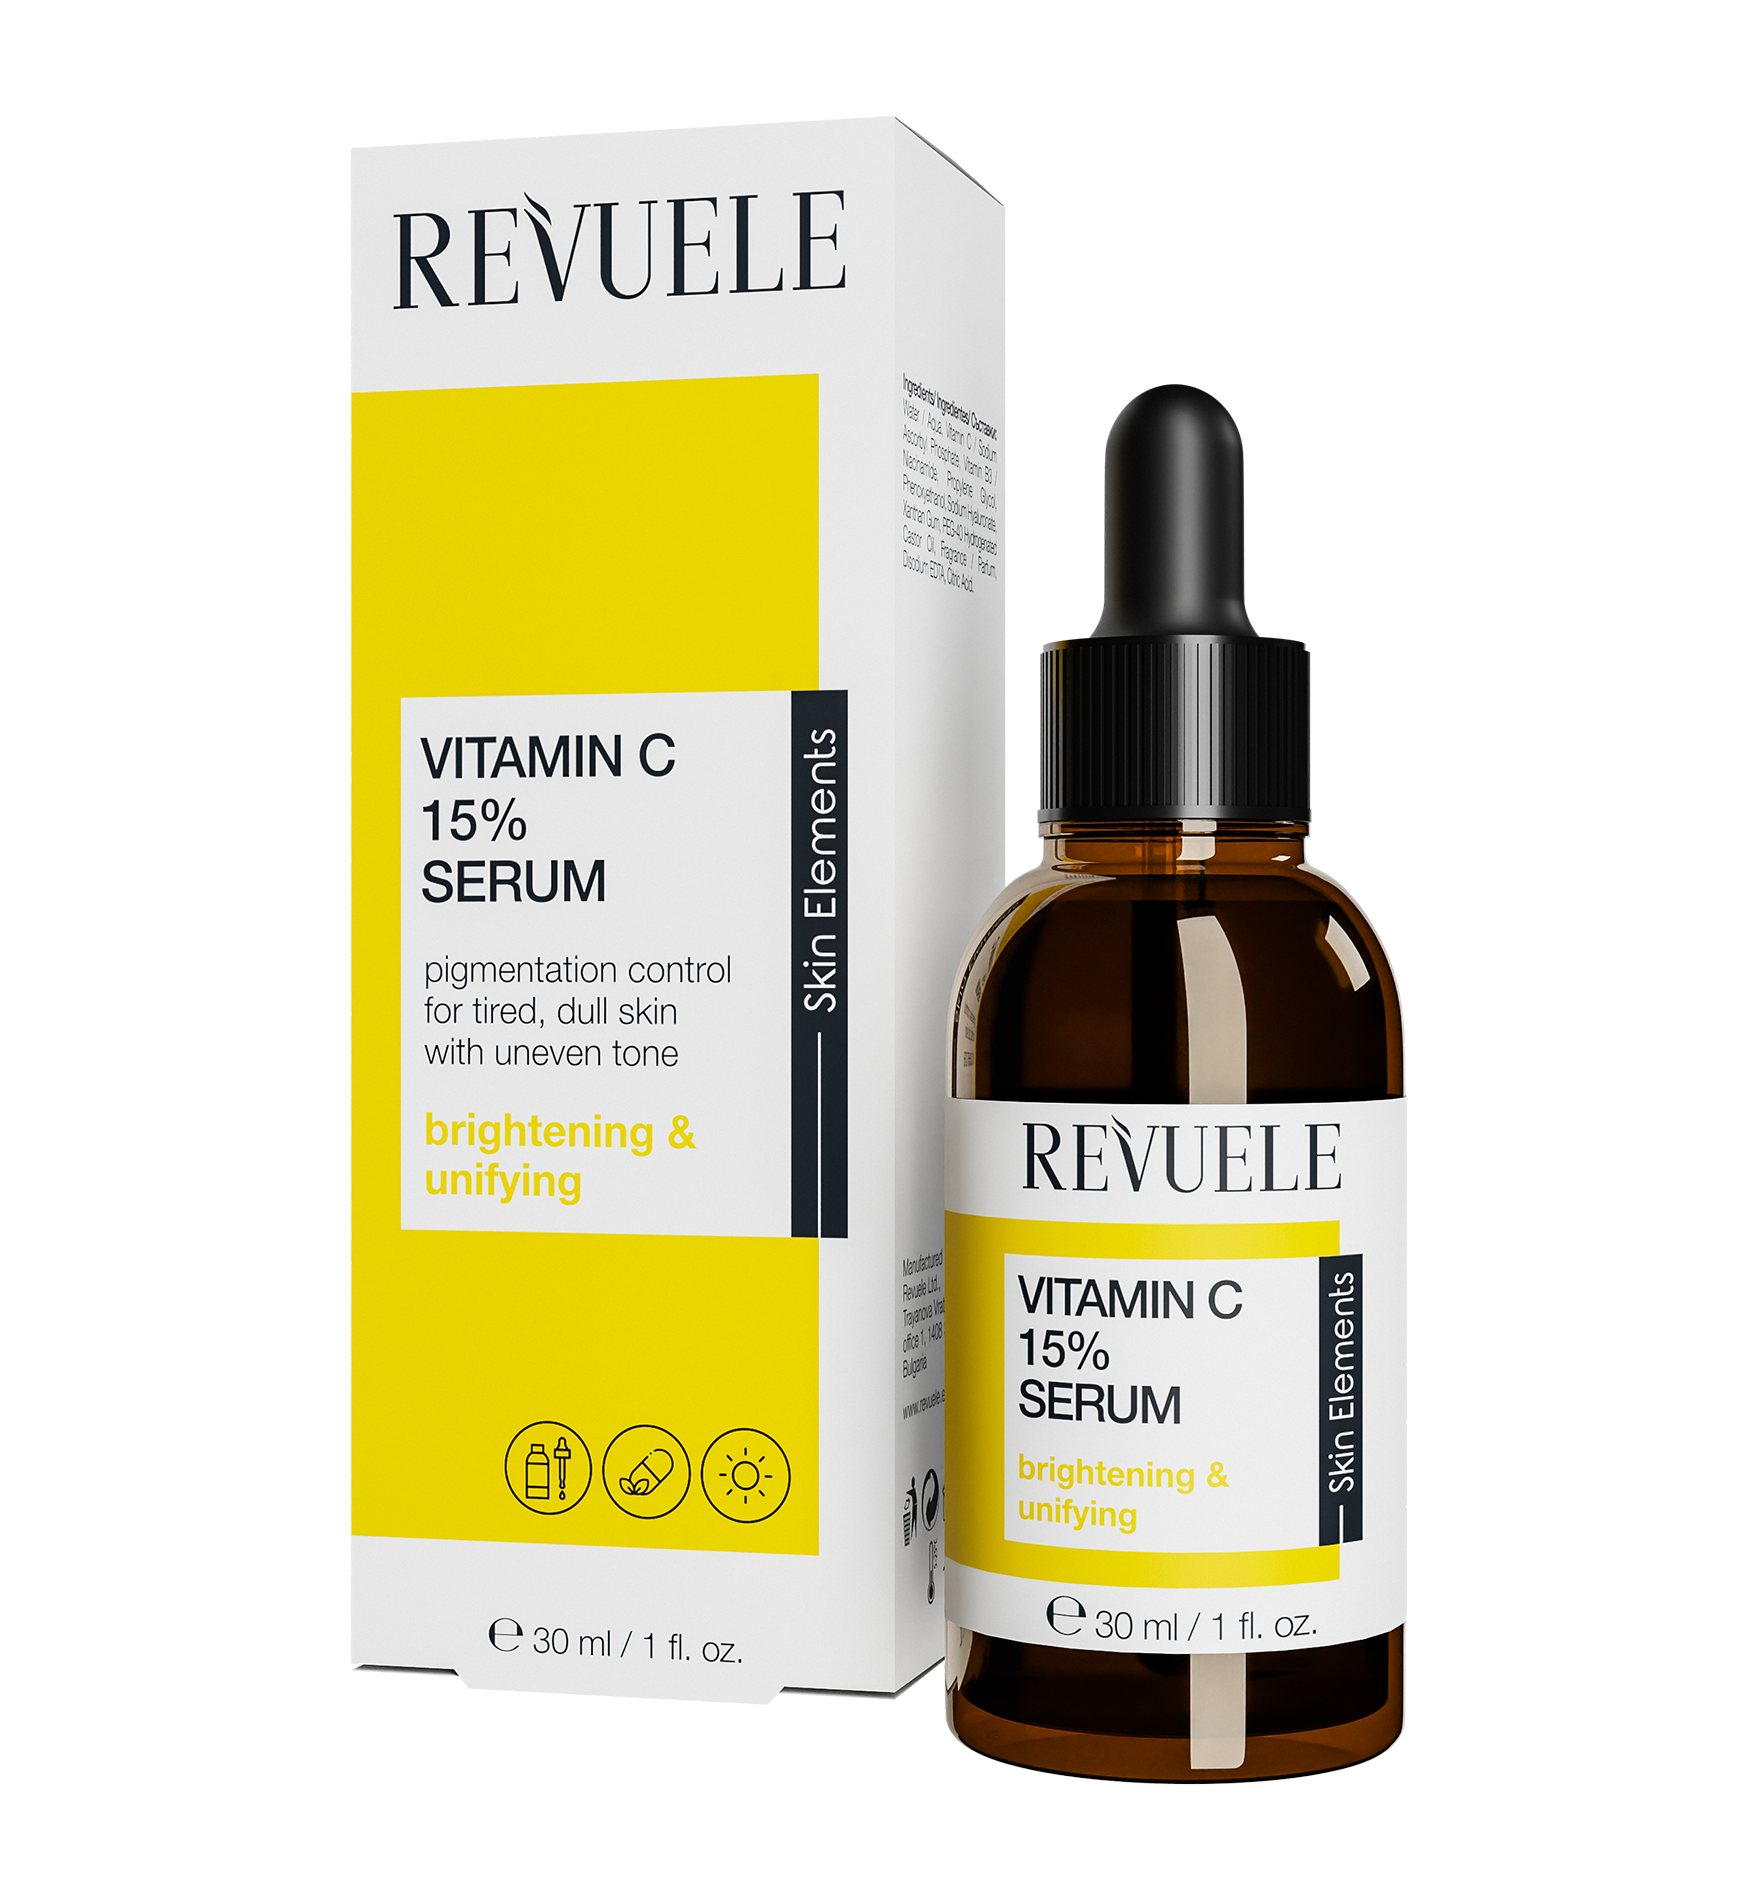 Revuele Vitamin C 15% Serum Освітлювальна сироватка для обличчя з вітаміном С